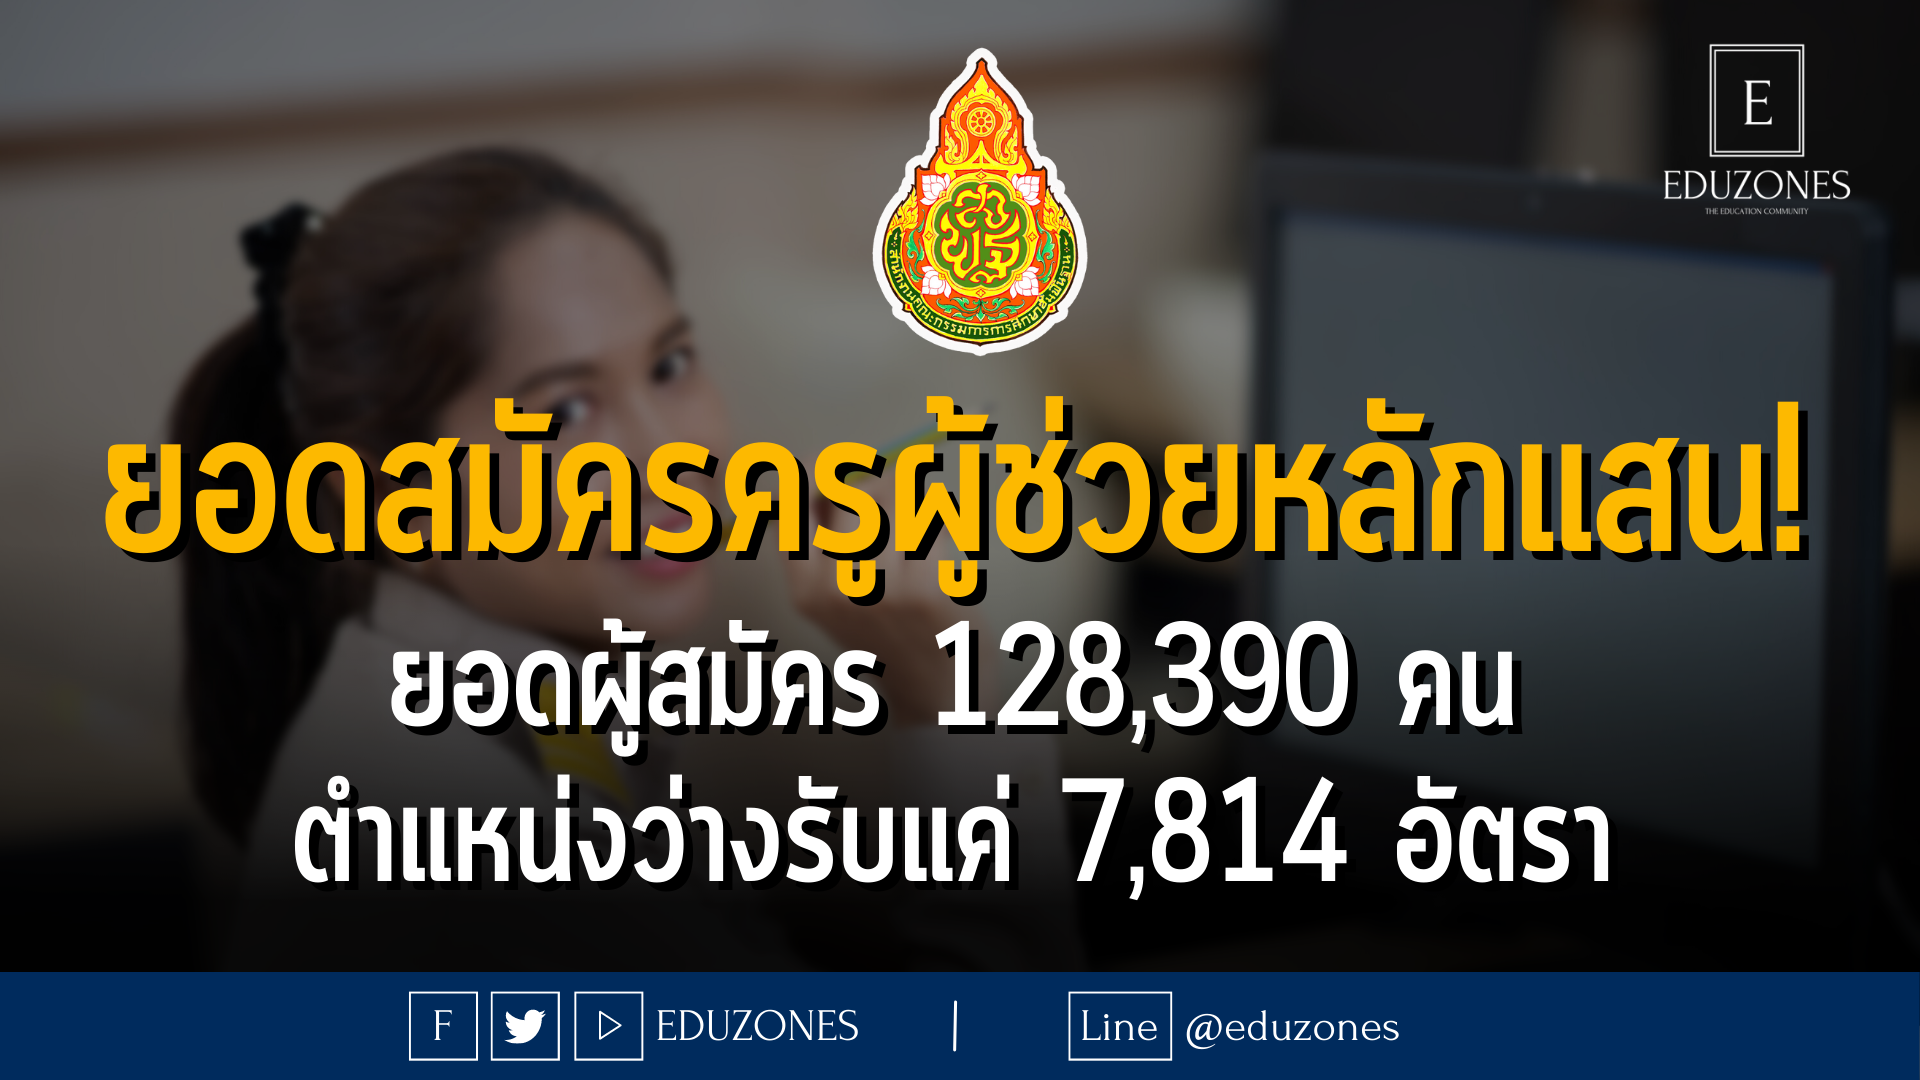 ยอดสมัครครูผู้ช่วยหลักแสน! ยอดผู้สมัคร 128,390 คน ตำแหน่งว่างรับแค่ 7,814 อัตรา